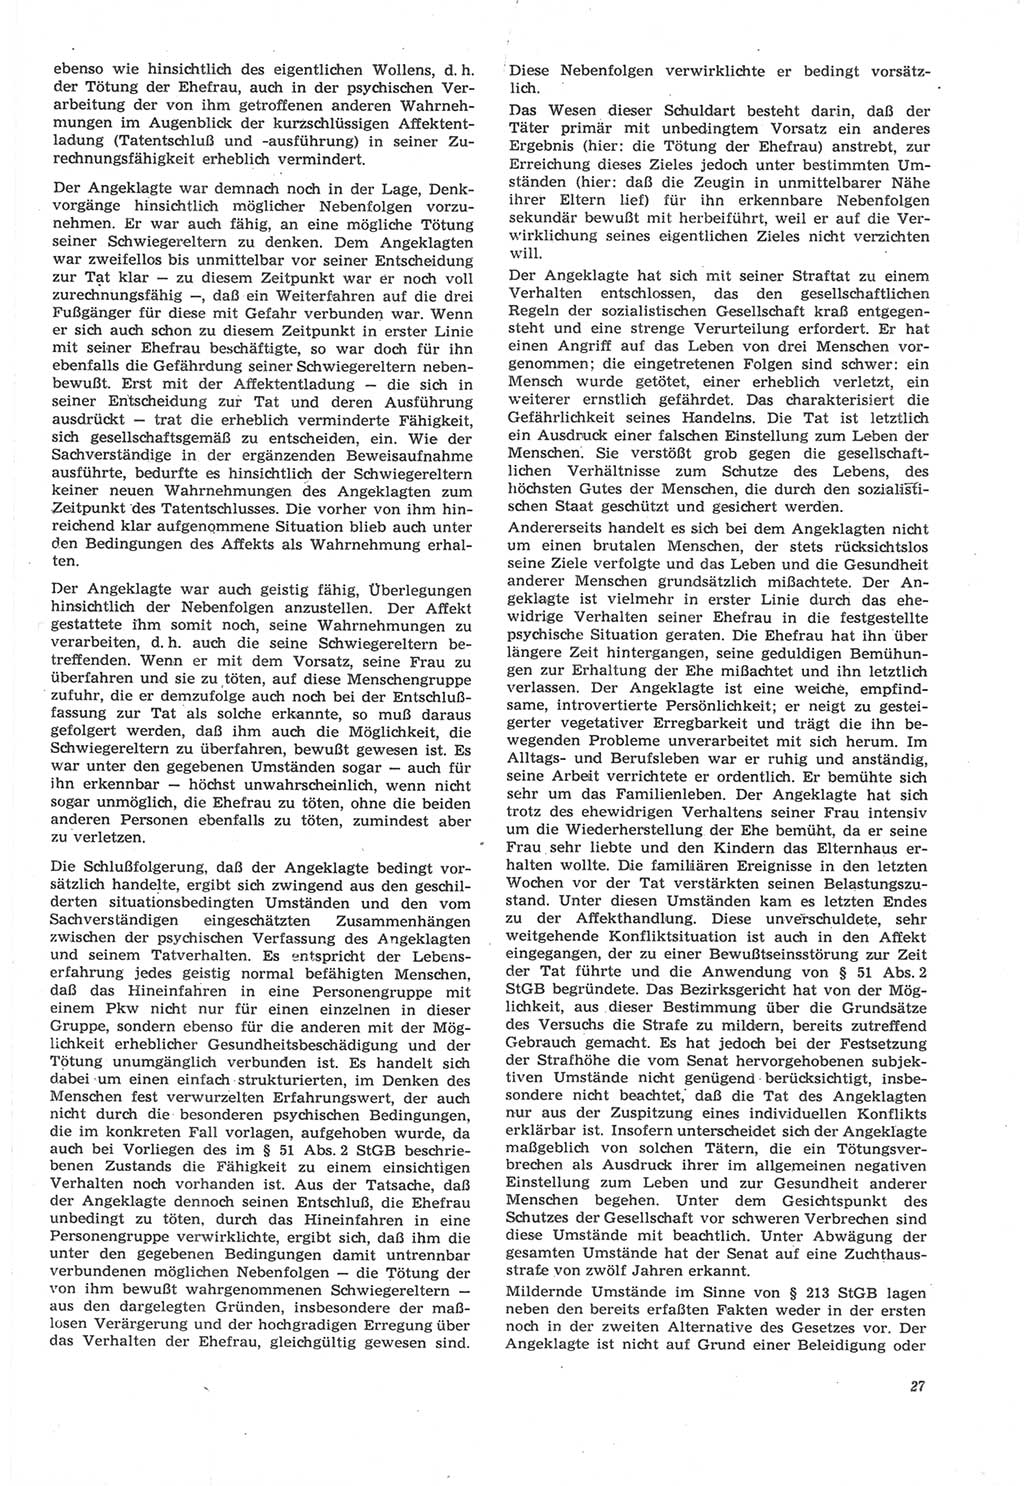 Neue Justiz (NJ), Zeitschrift für Recht und Rechtswissenschaft [Deutsche Demokratische Republik (DDR)], 22. Jahrgang 1968, Seite 27 (NJ DDR 1968, S. 27)